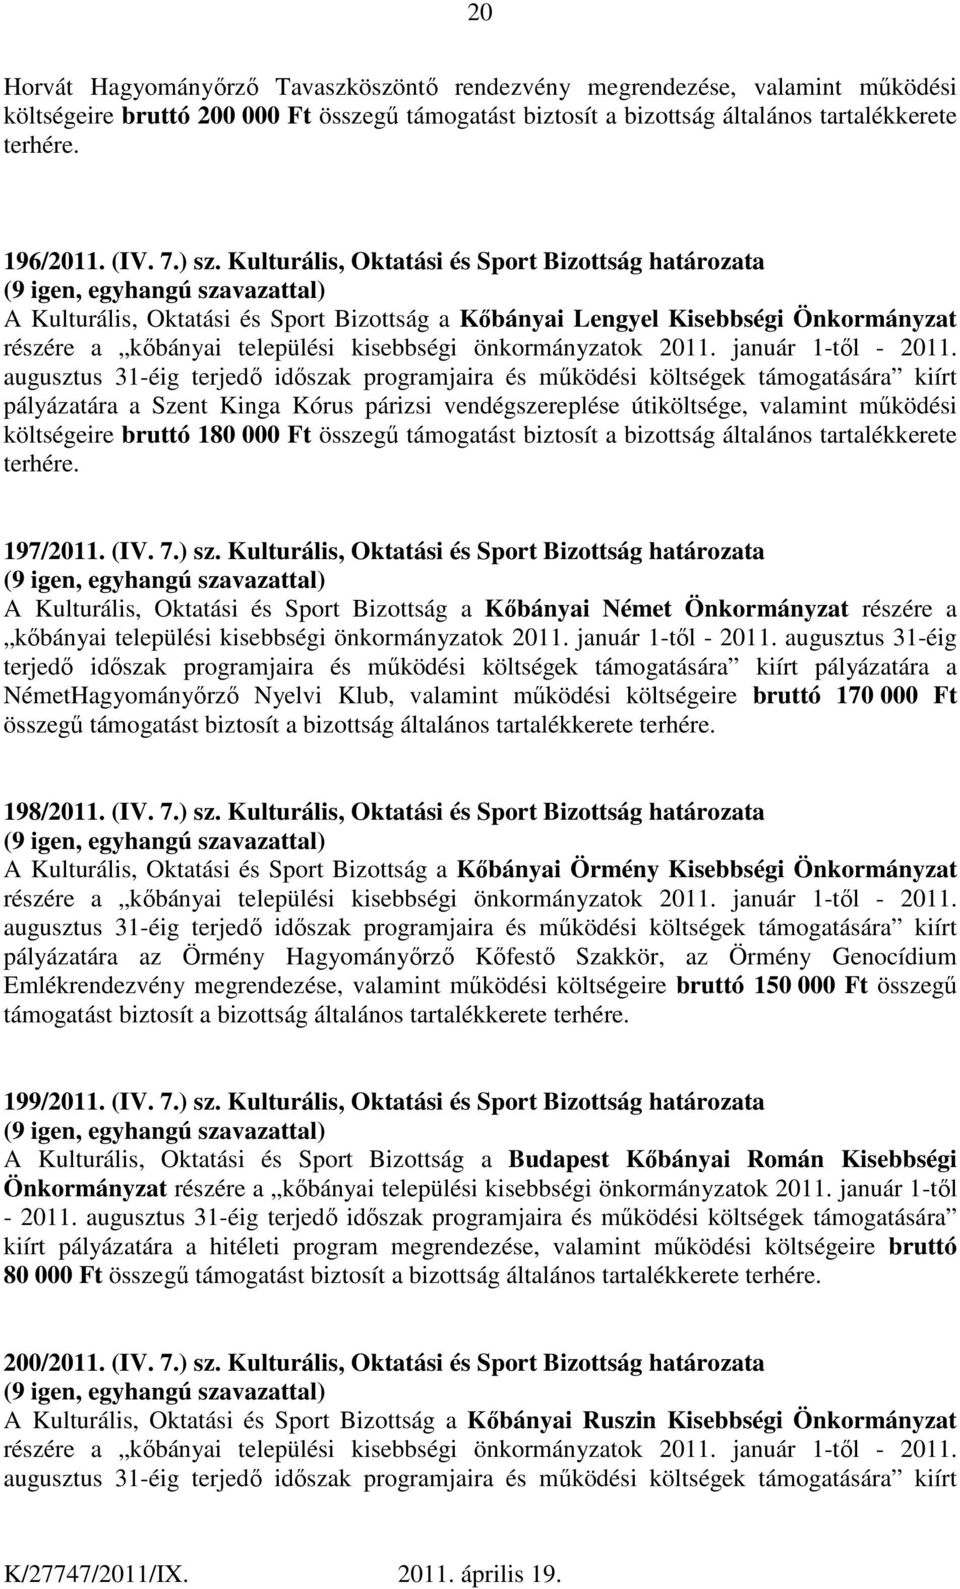 Kulturális, Oktatási és Sport Bizottság határozata A Kulturális, Oktatási és Sport Bizottság a Kőbányai Lengyel Kisebbségi Önkormányzat részére a kőbányai települési kisebbségi önkormányzatok 2011.